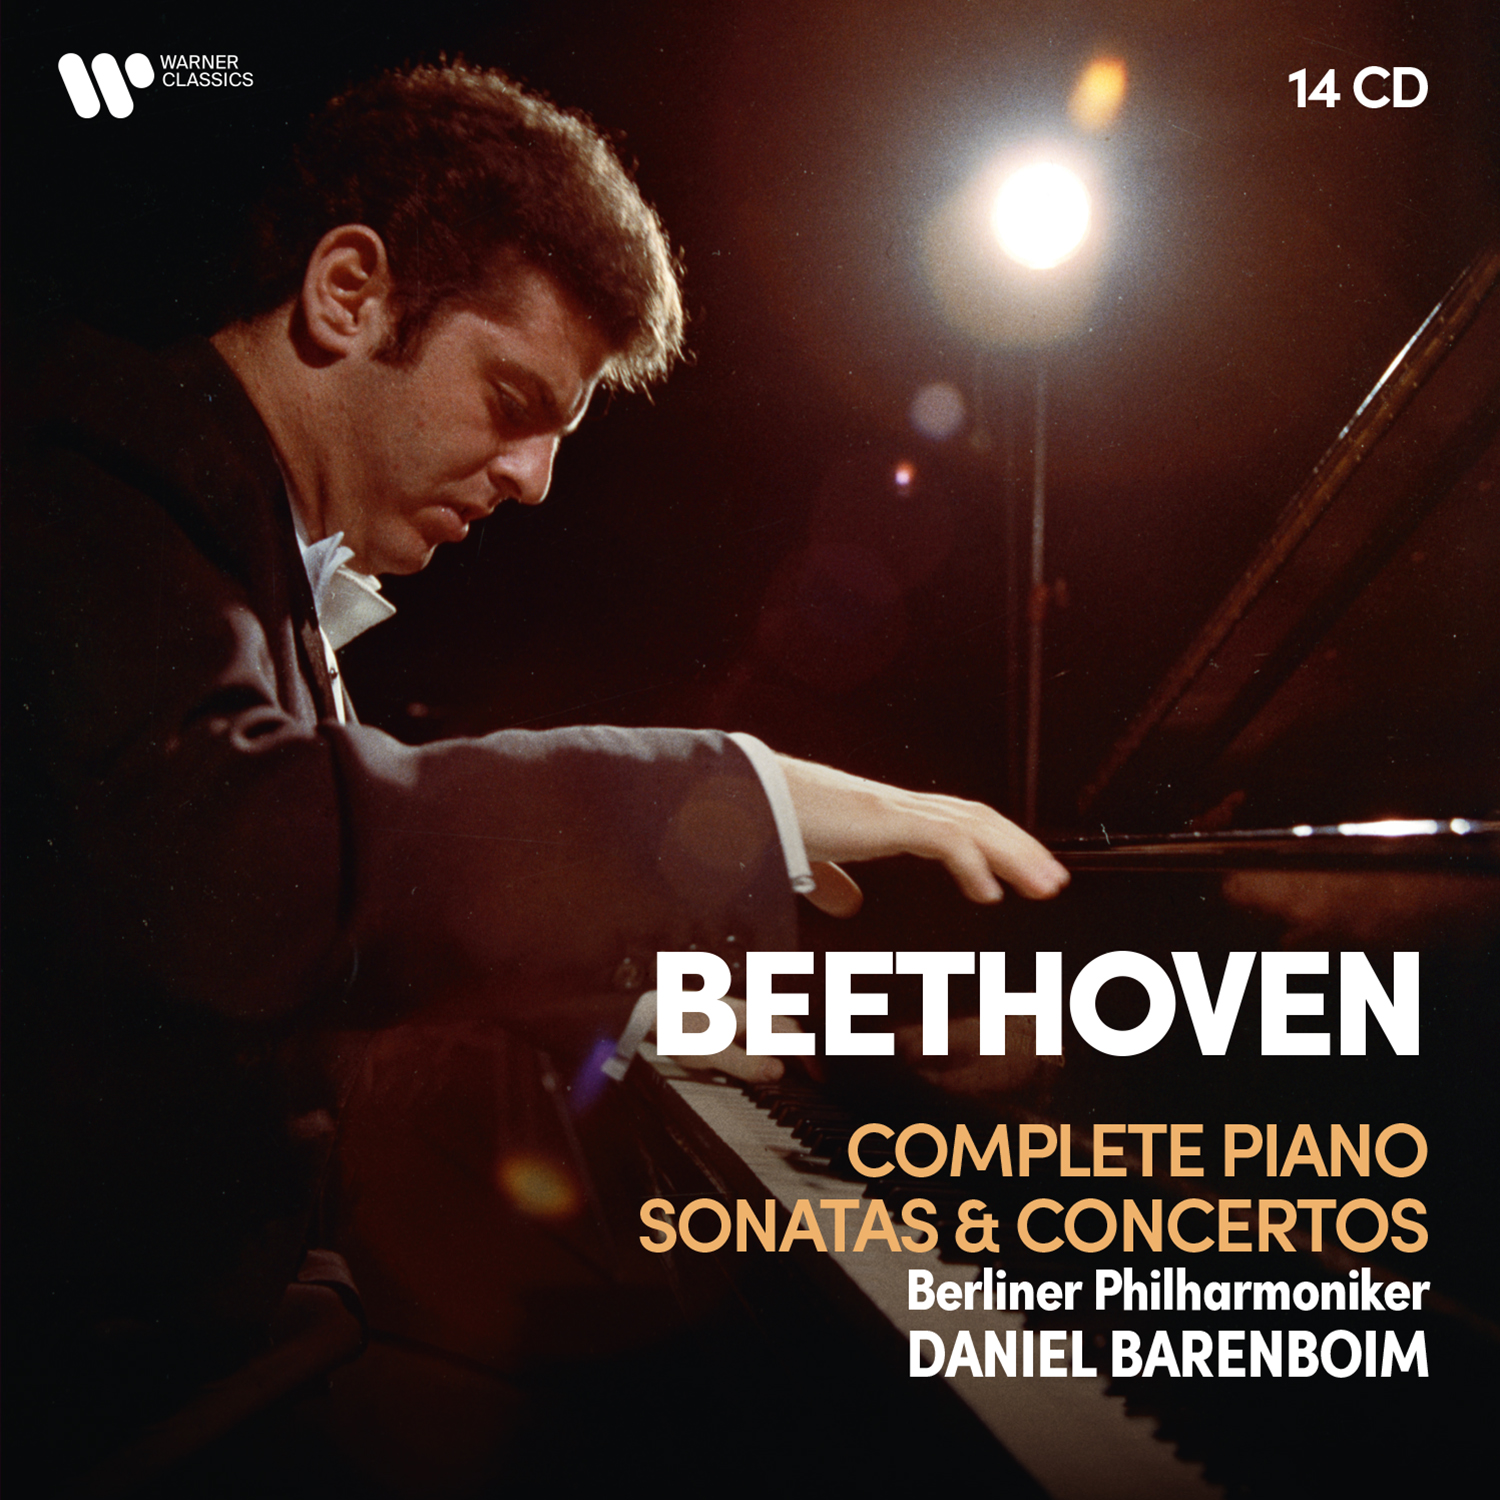 Beethoven Complete Piano Sonatas & Concertos, Diabelli Variations